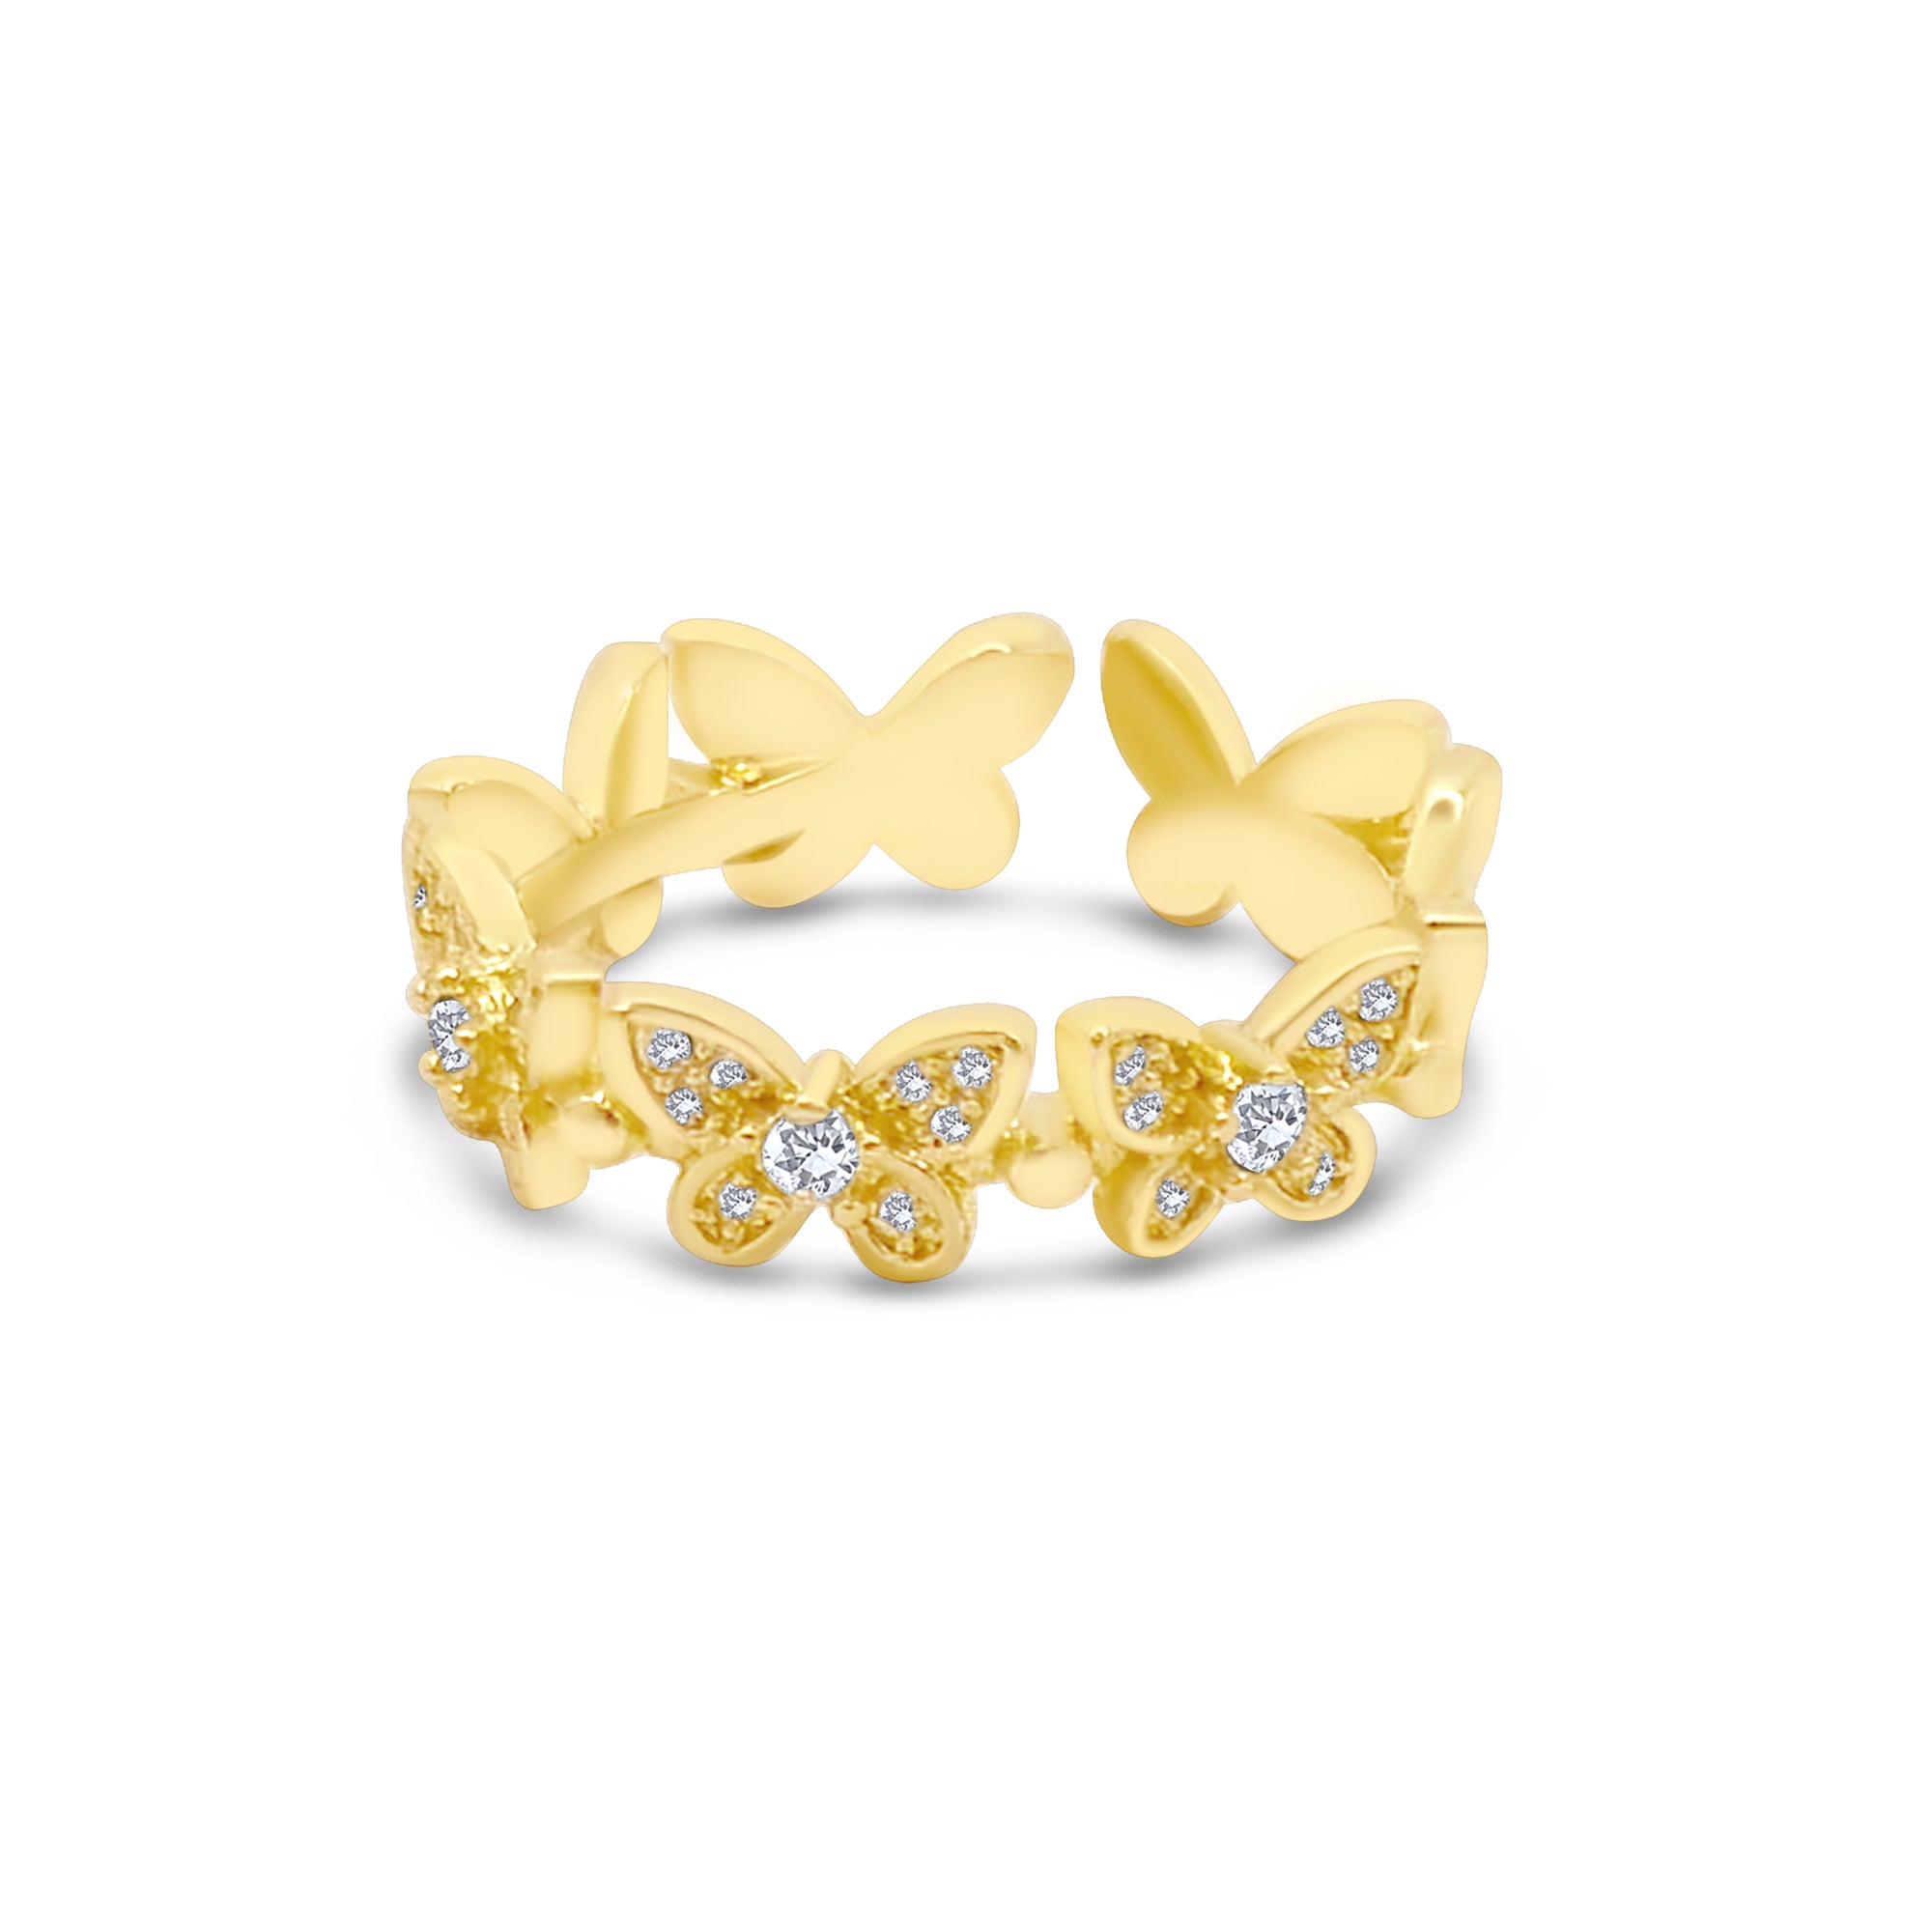 Wasserfester verstellbarer Ring Gold mit Zirkonia vom Onlineshop 1887Gem. Jetzt online kaufen.